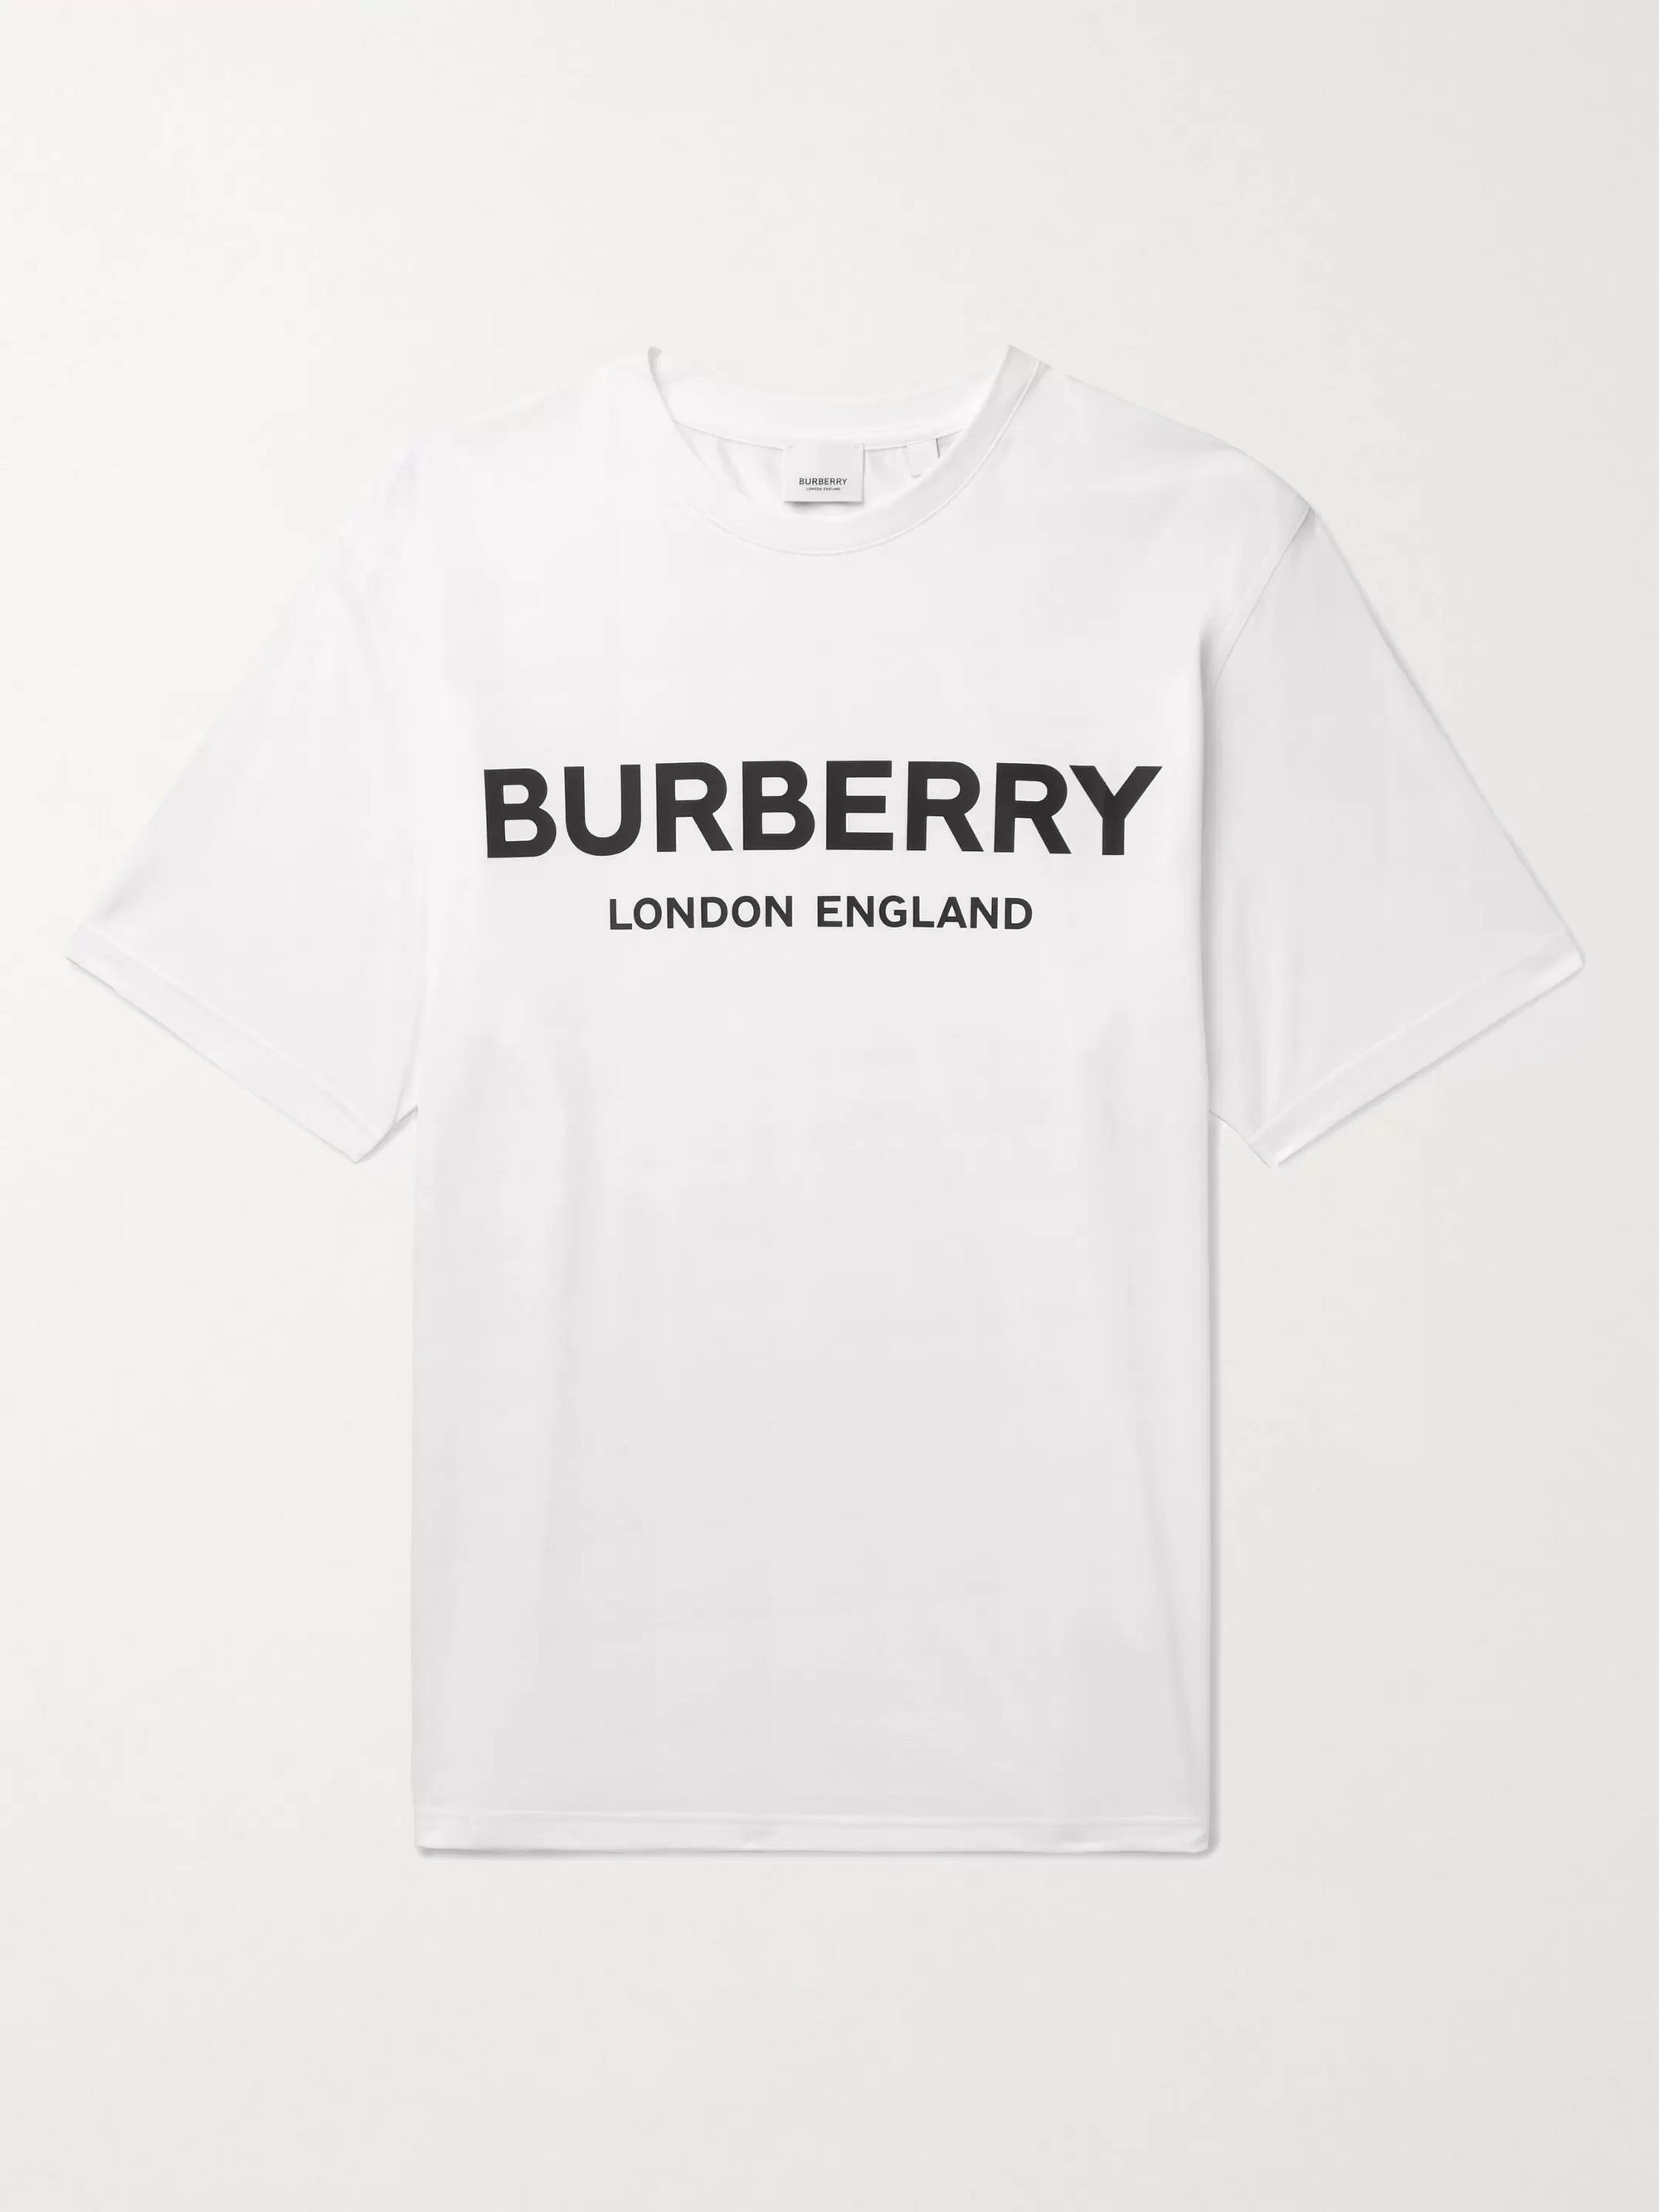 burberry shirt t shirt